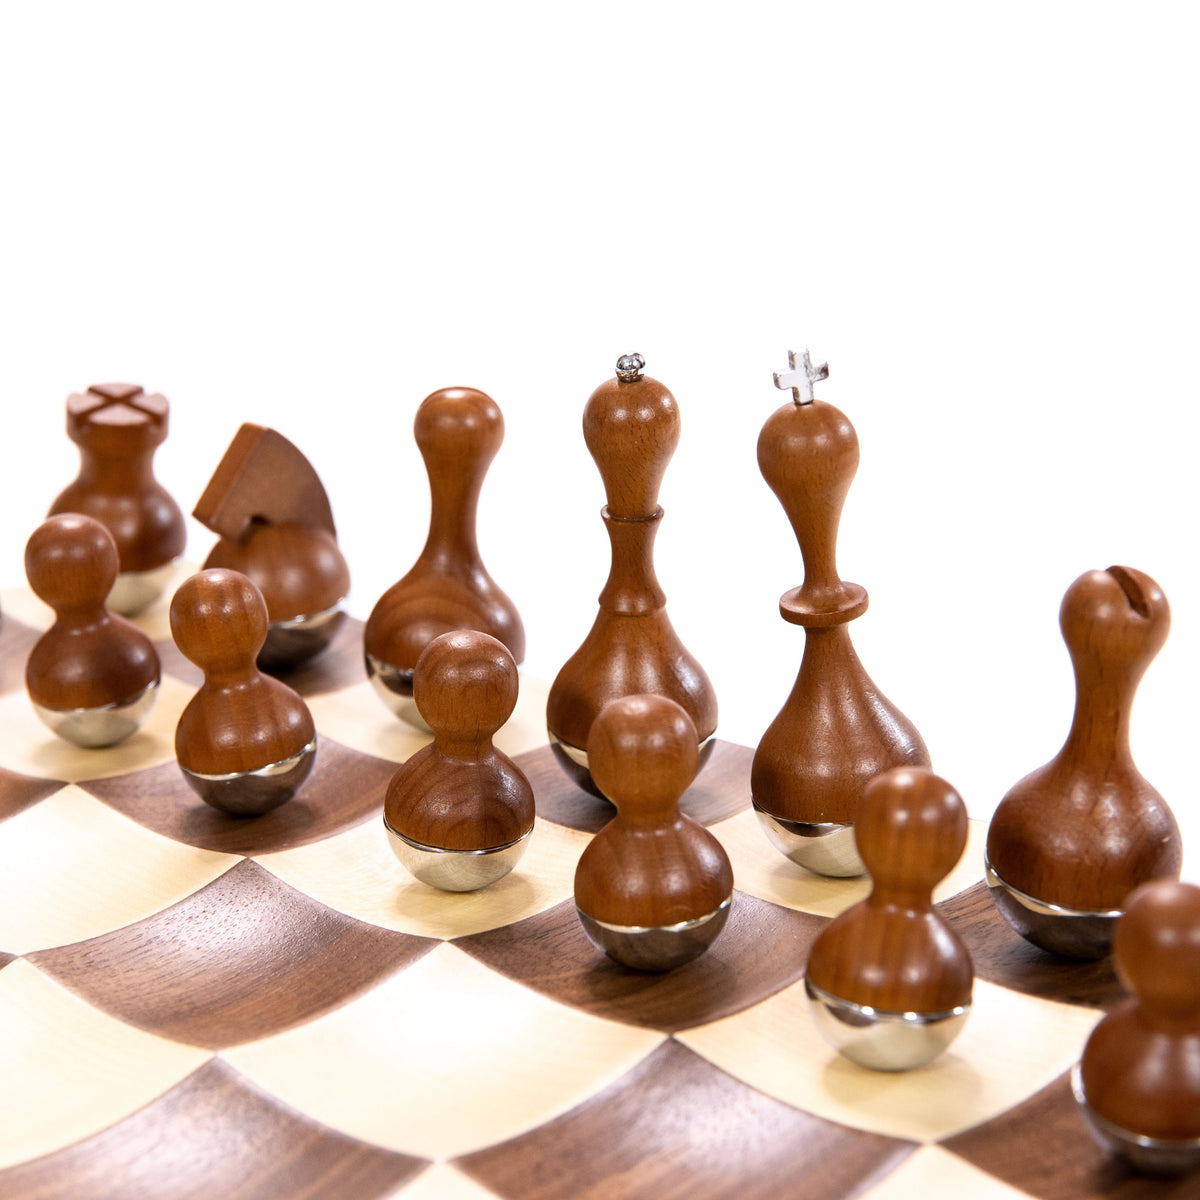 Wobble Chess Set  Collect Renaissance